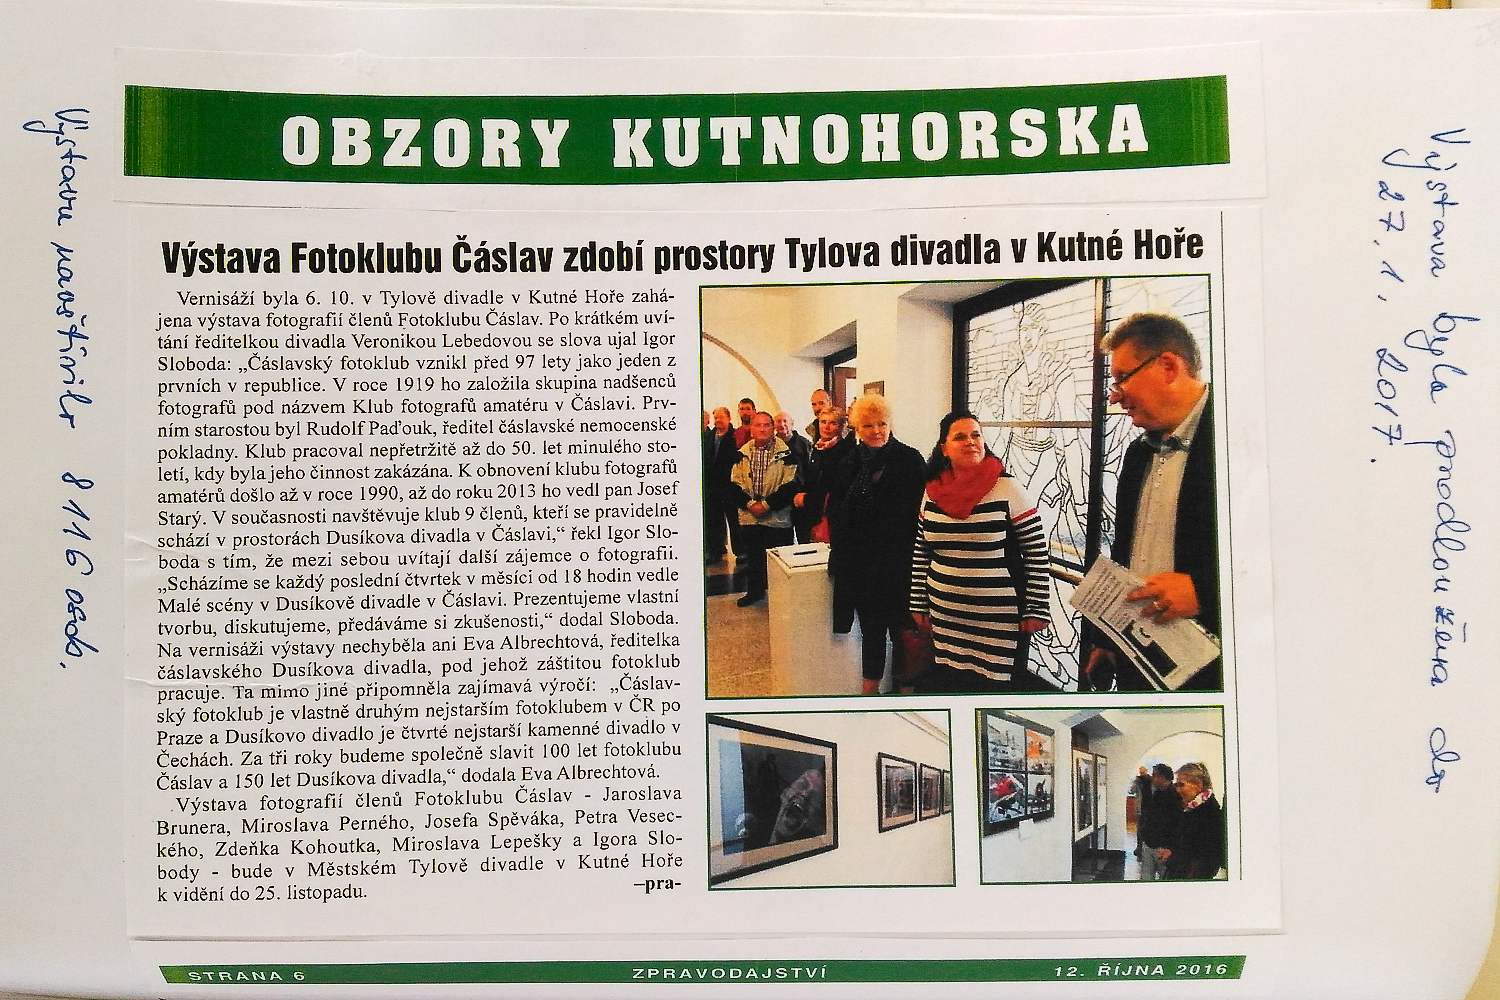 Monika Pravdová na vernisáži fotoklubu v Kutné Hoře 